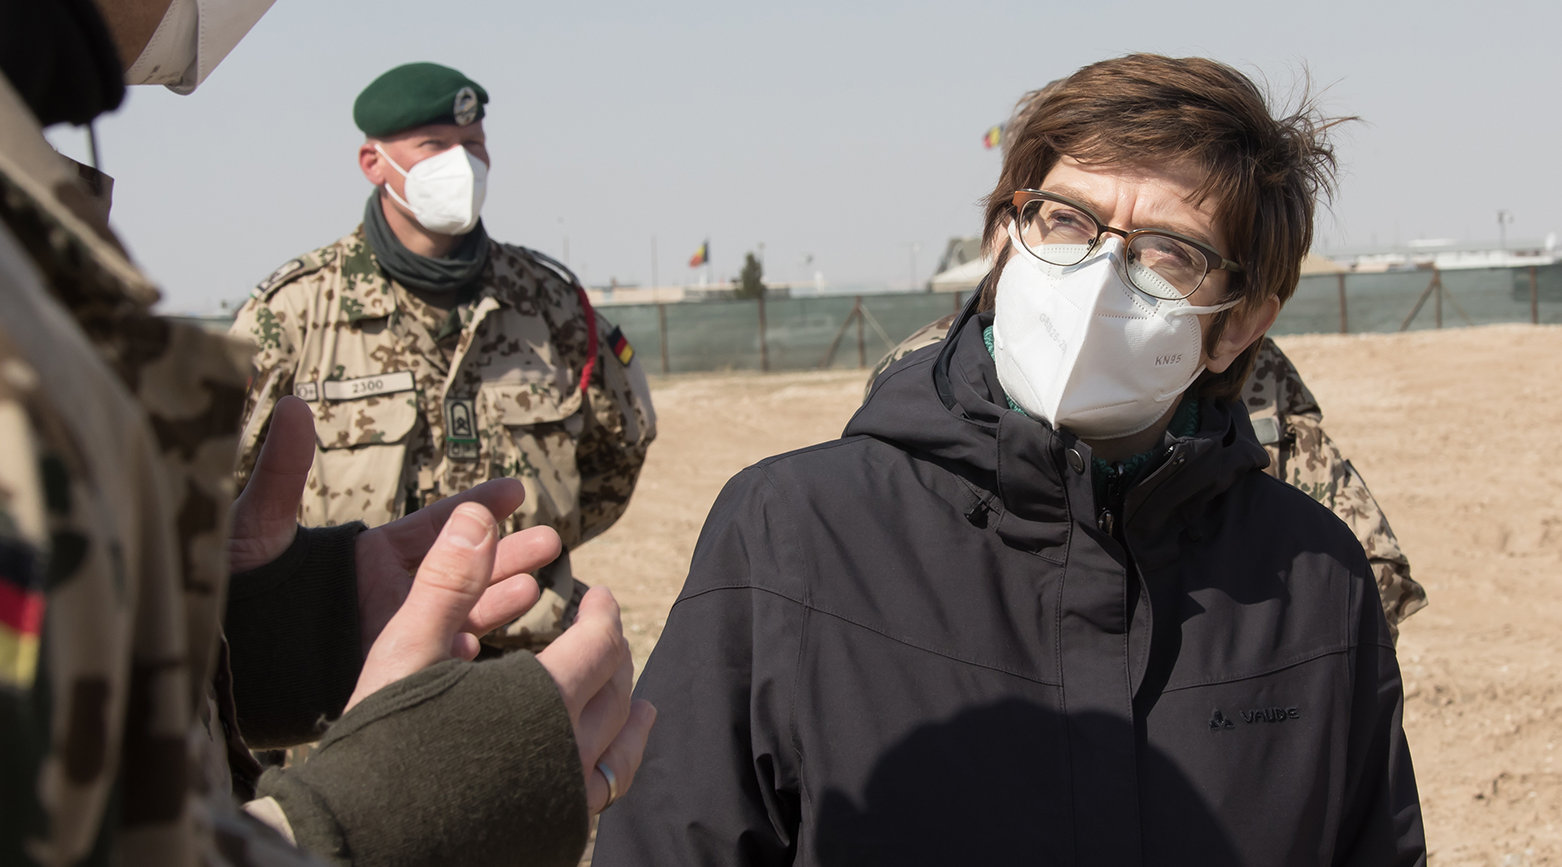 Verteidigungsministerin Annegret Kramp-Karrenbauer #AKK stattet der Truppe in Afghanistan einen Überraschungsbesuch ab